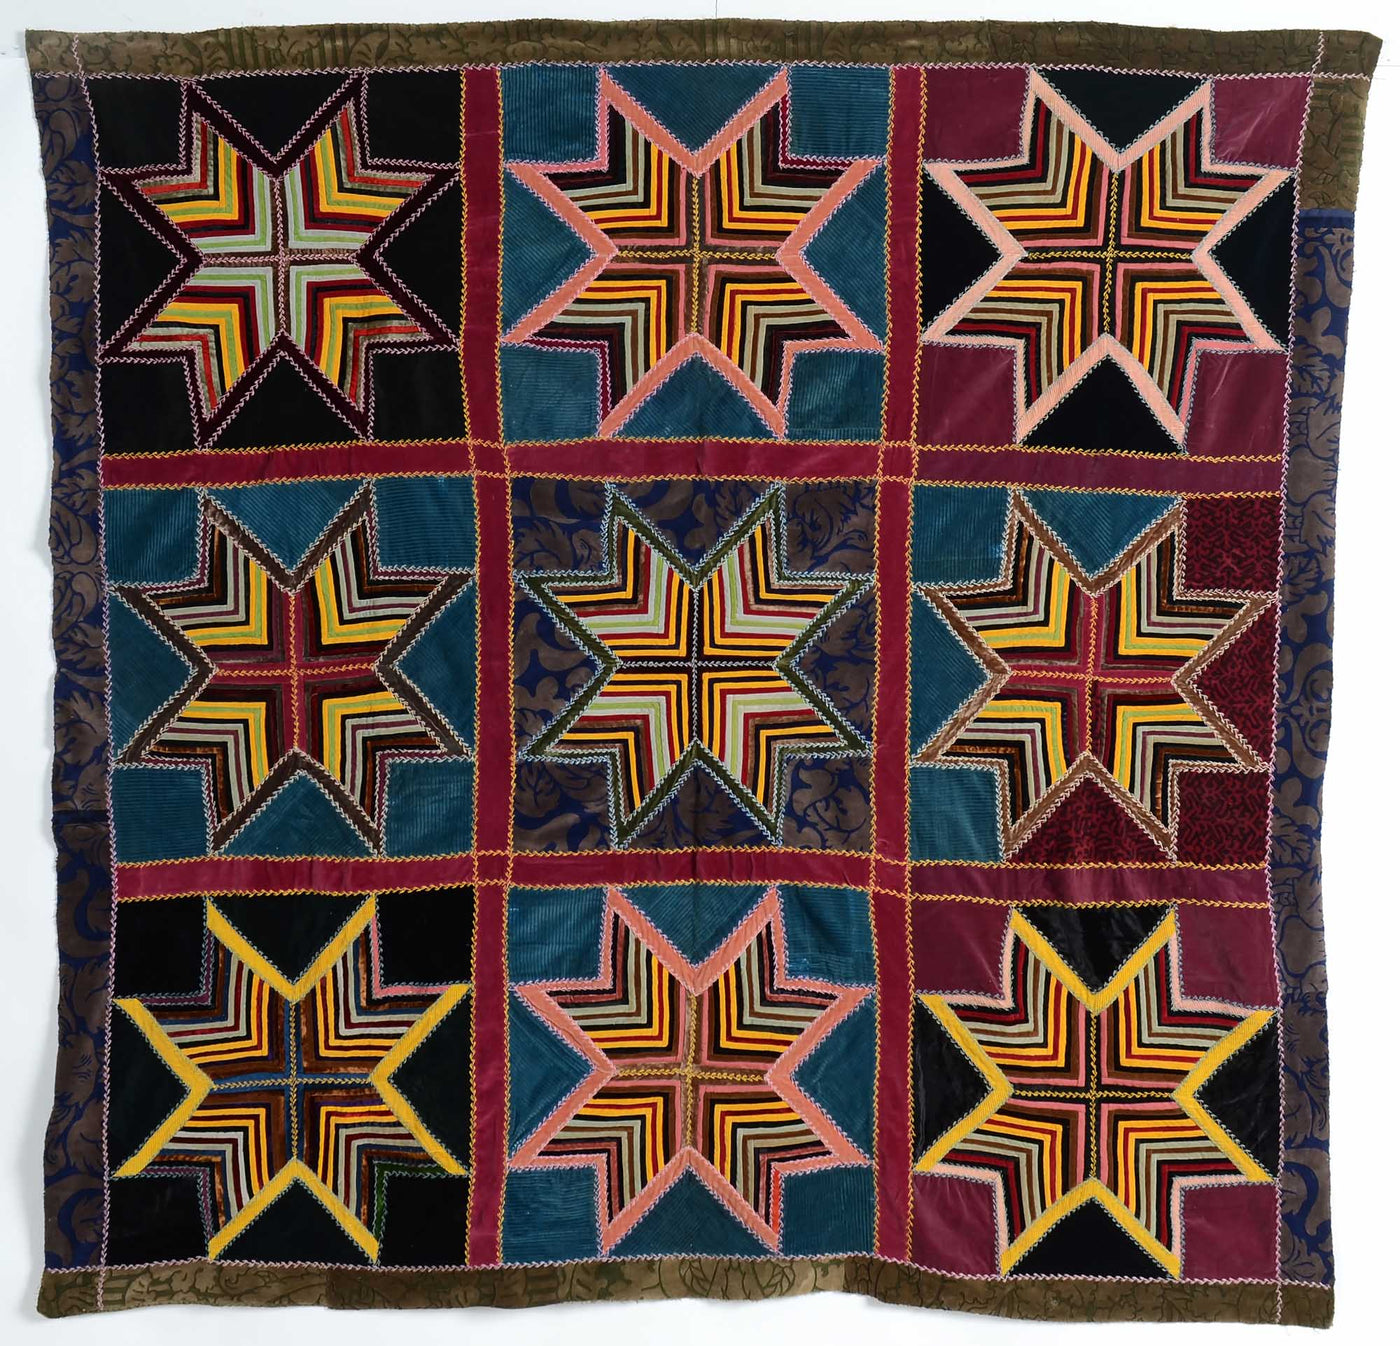 velvet-string-stars-antique-quilt-1445052